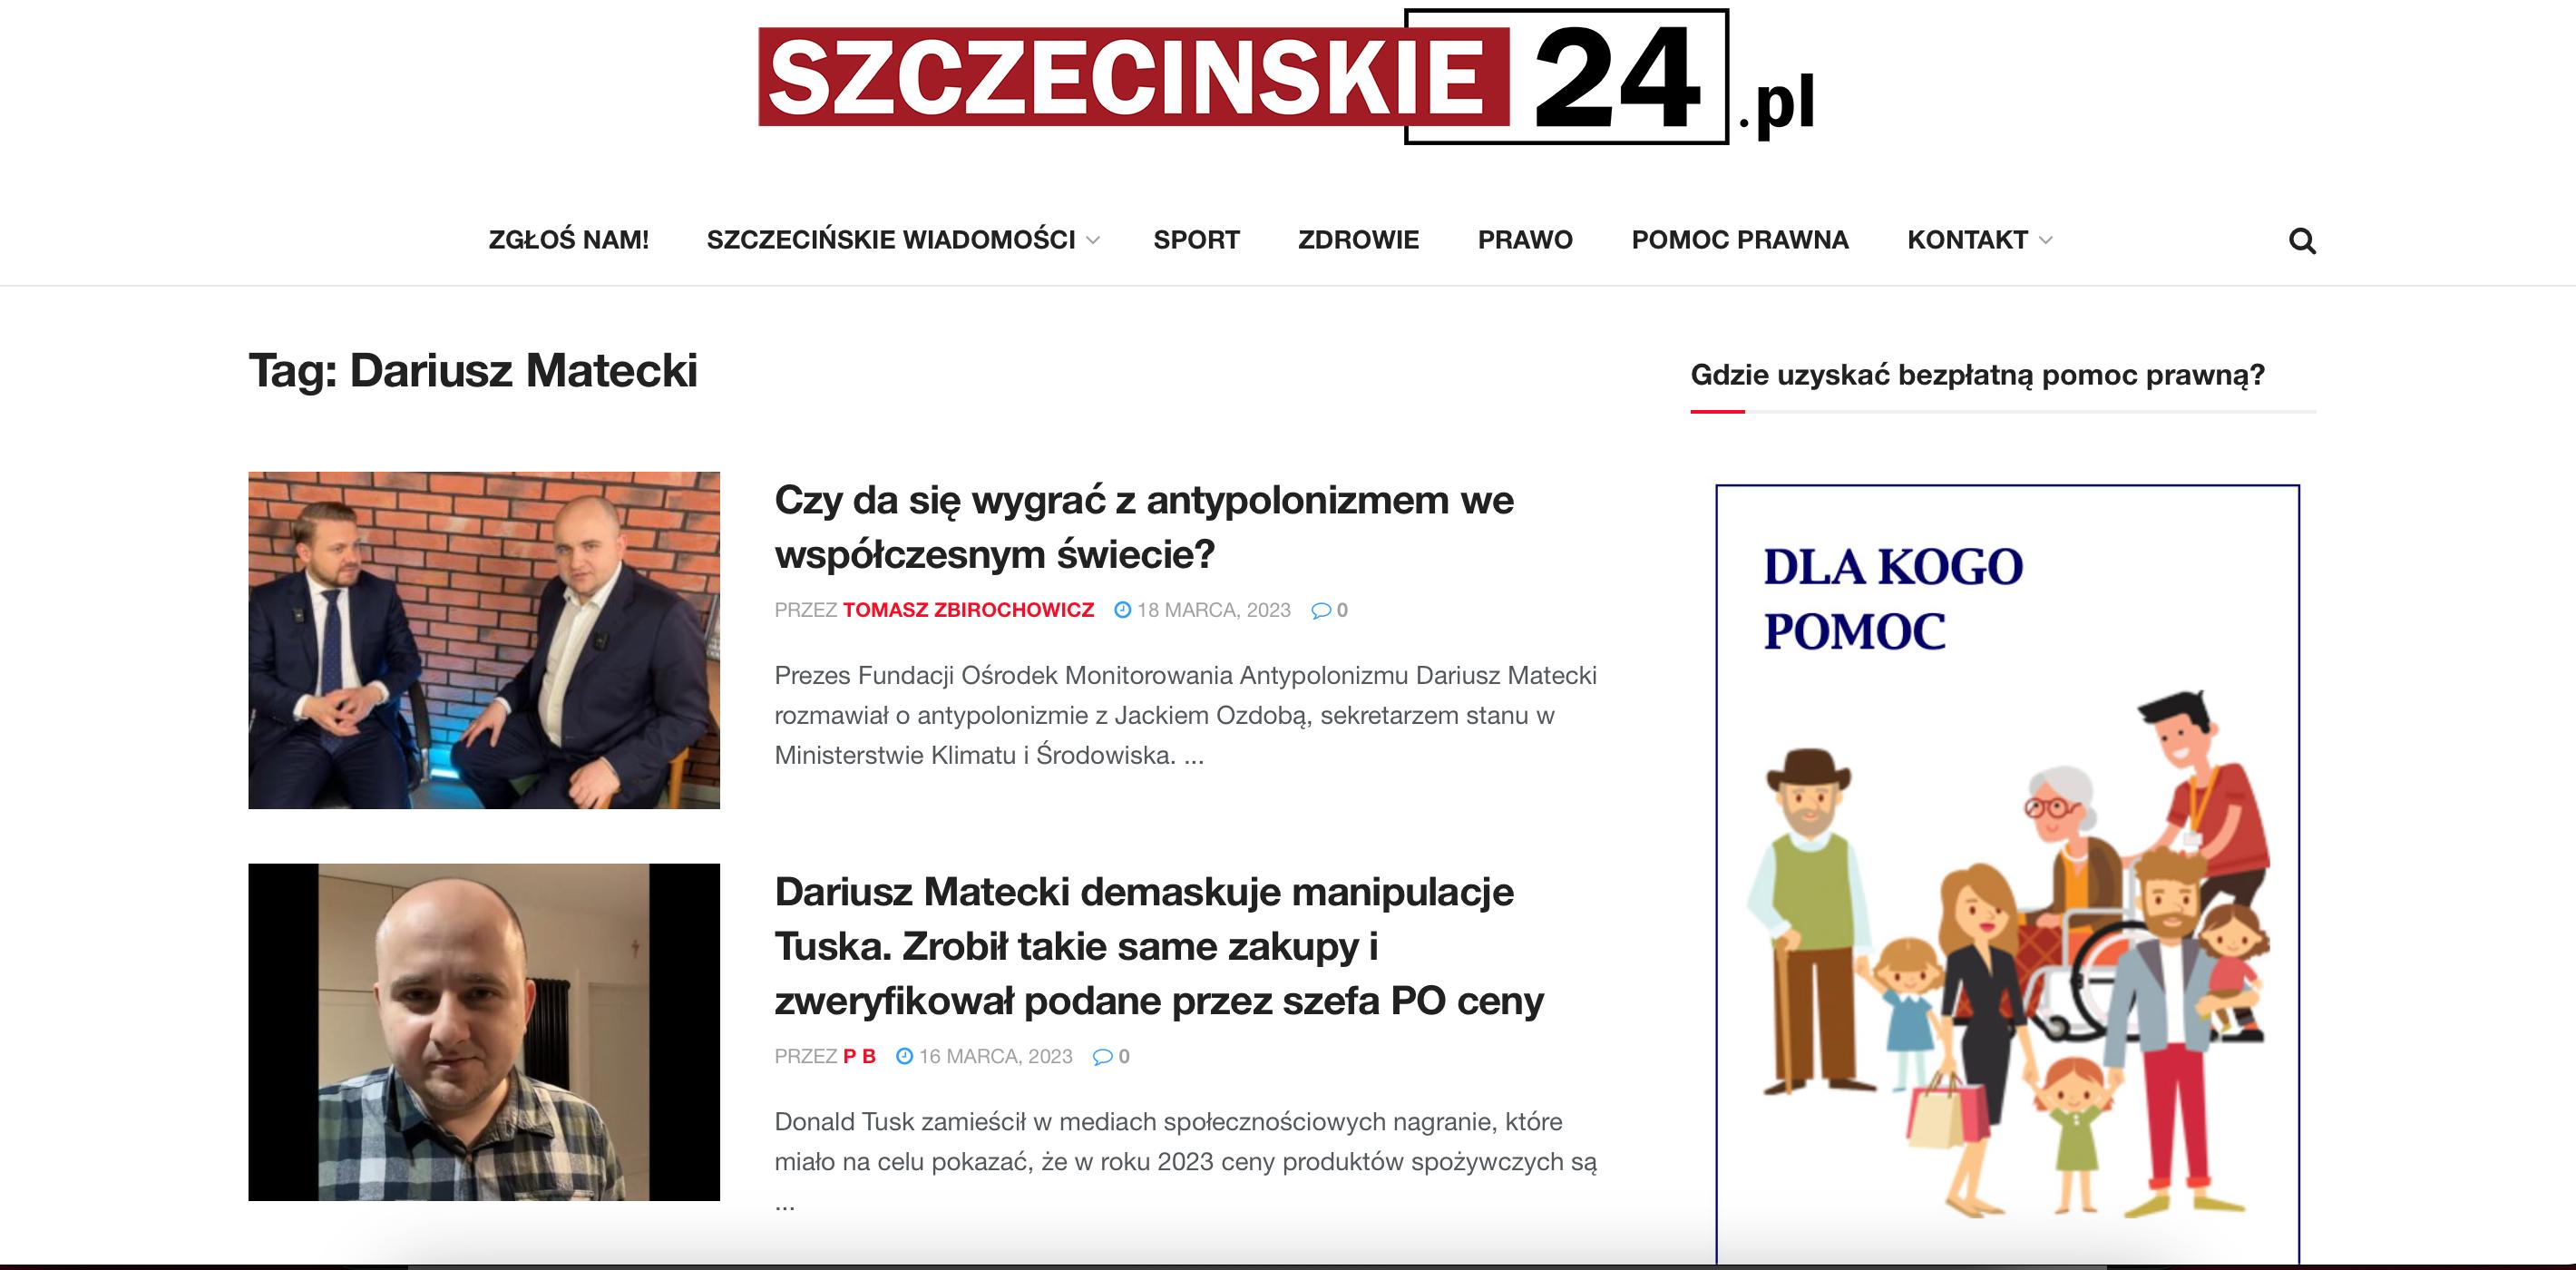 zrzut ekranu z portalu szczecinskie24 z artykułami o Mateckim